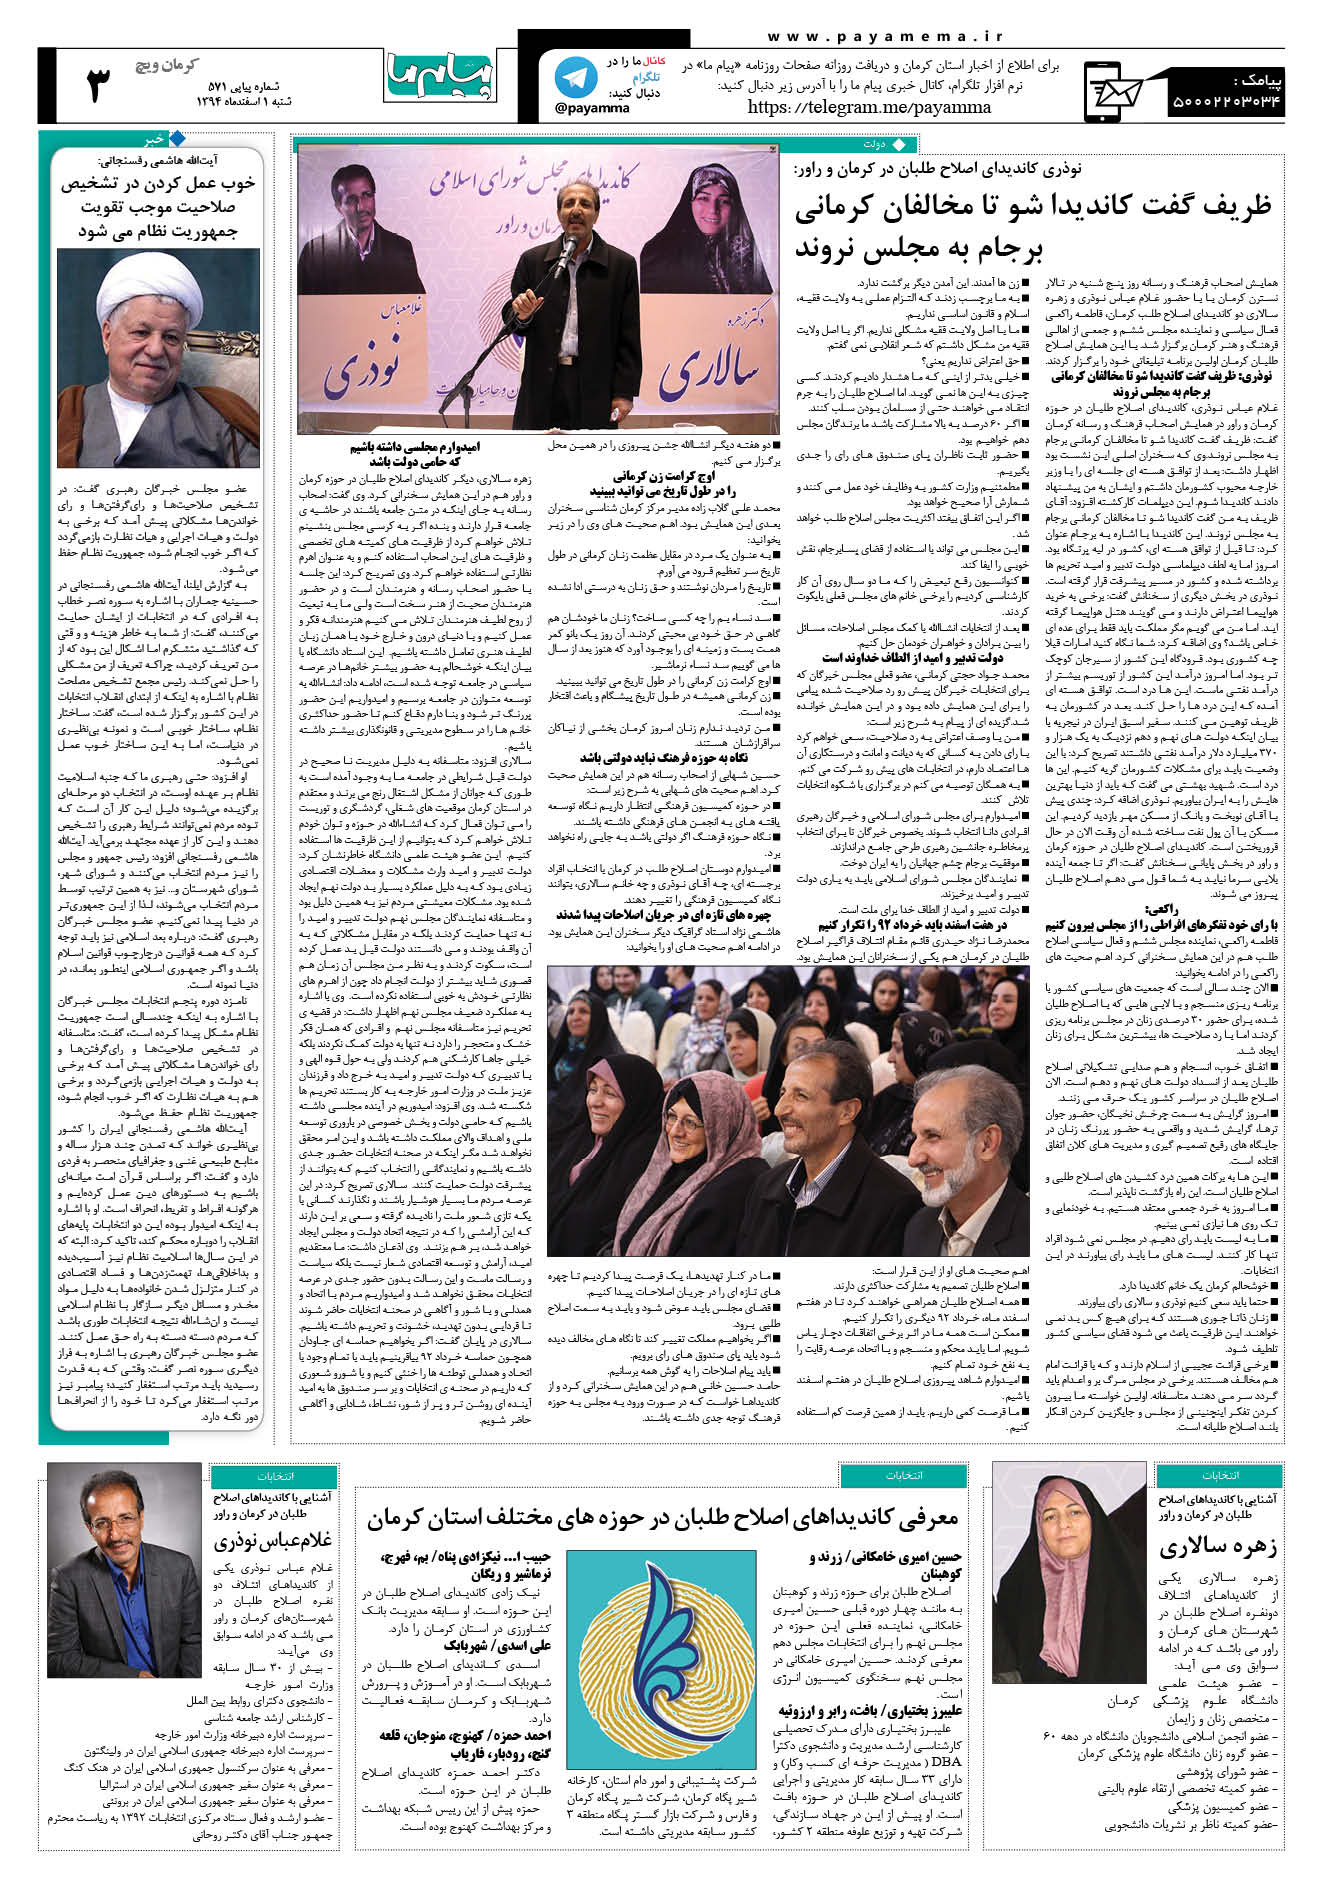 صفحه کرمان ویج شماره 571 روزنامه پیام ما